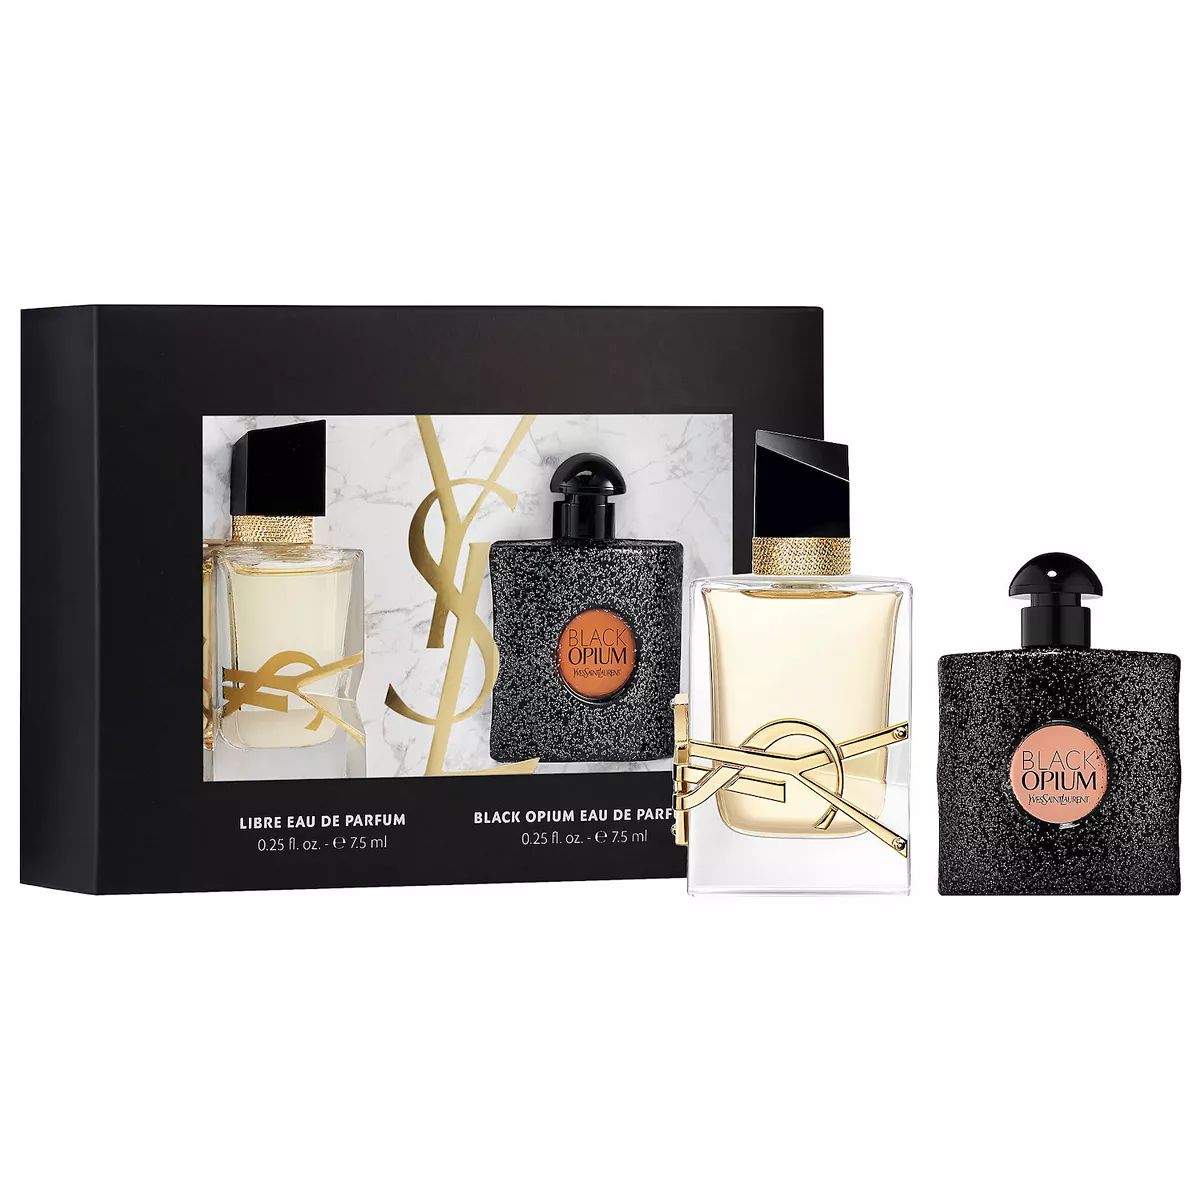 Yves Saint Laurent Mini Black Opium & Libre Eau de Parfum Set | Kohl's